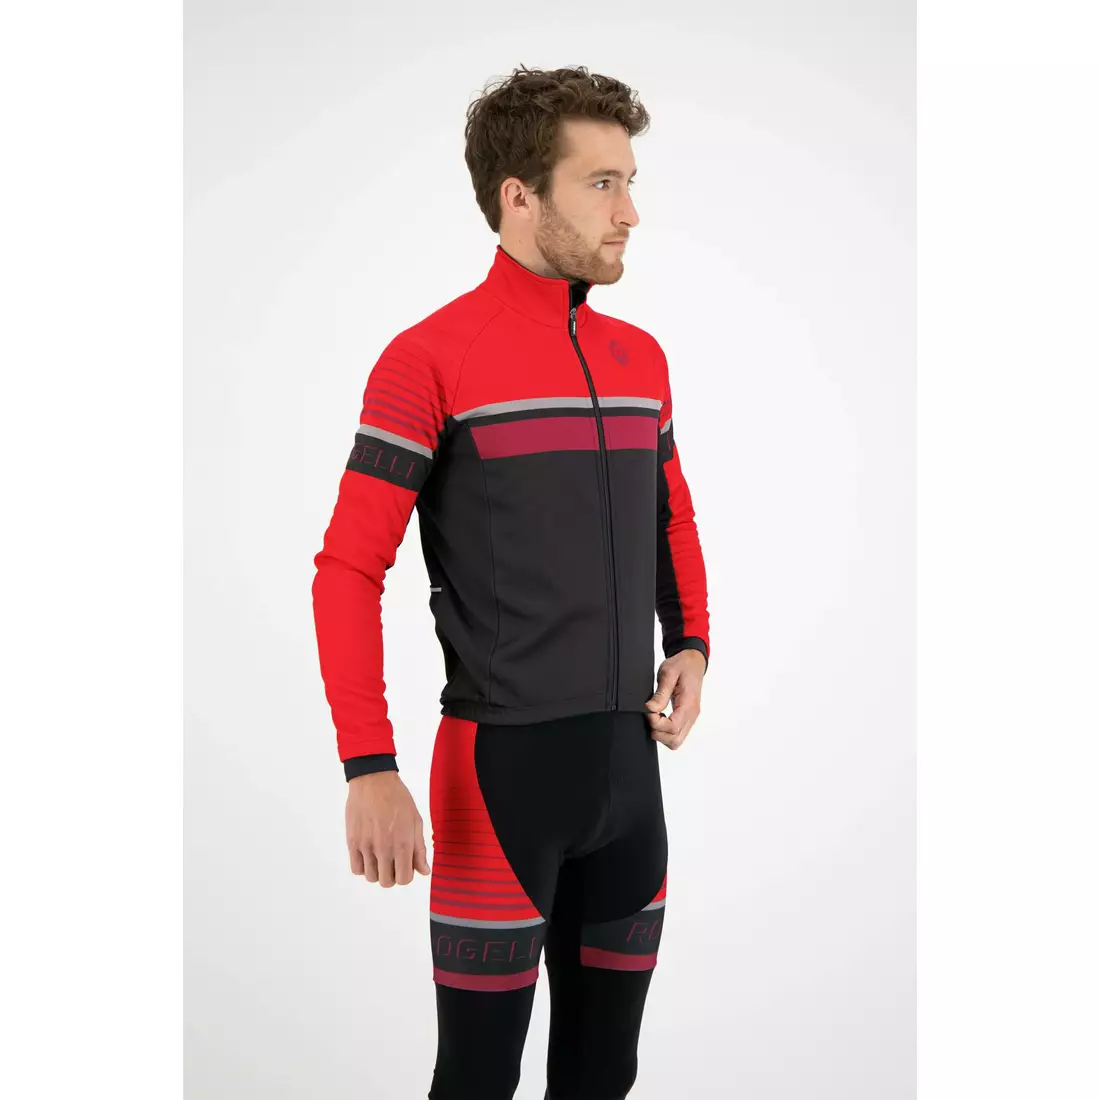 ROGELLI Jachetă de ciclism pentru bărbați HERO negru și roșu